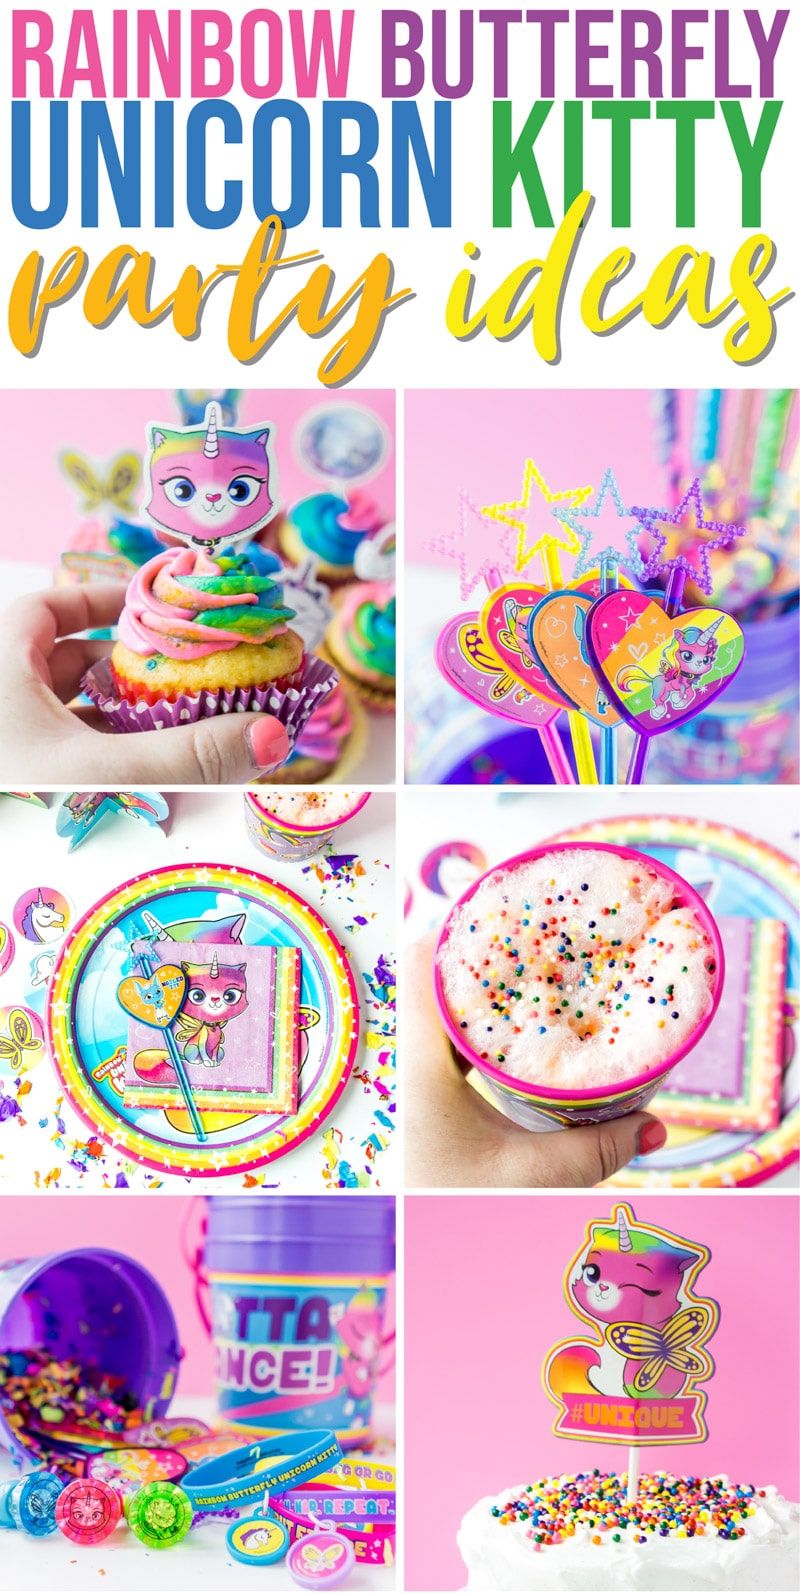 Les meilleures idées de fête de chat licorne papillon arc-en-ciel! Tout ce dont vous avez besoin - nourriture, décorations, faveurs et plus encore pour une célébration colorée.